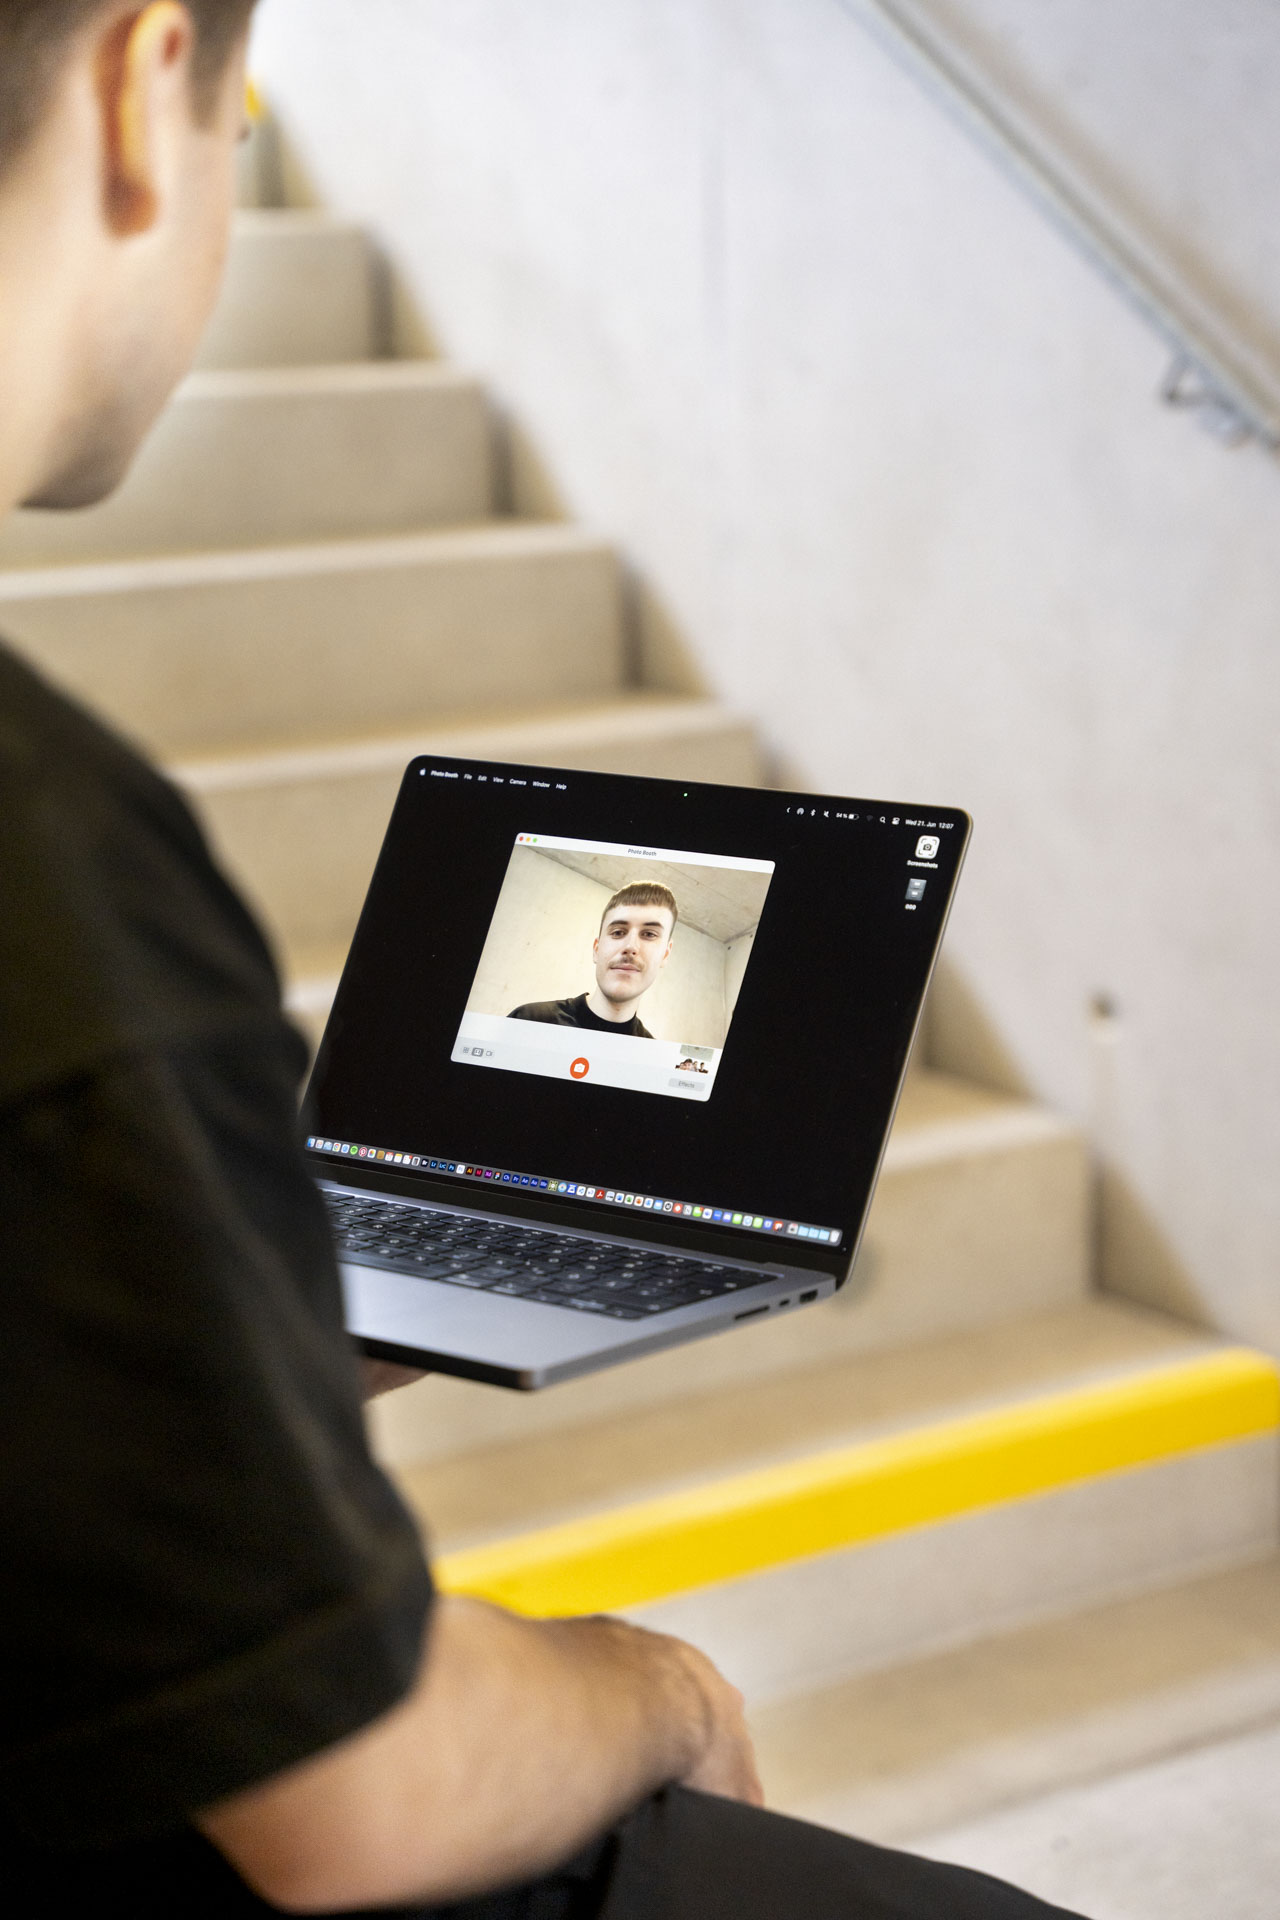 Bastian Gasser haltet den Laptop mit einer Hand und am Display sieht man ihn selbst über die live Webcamaufnahme